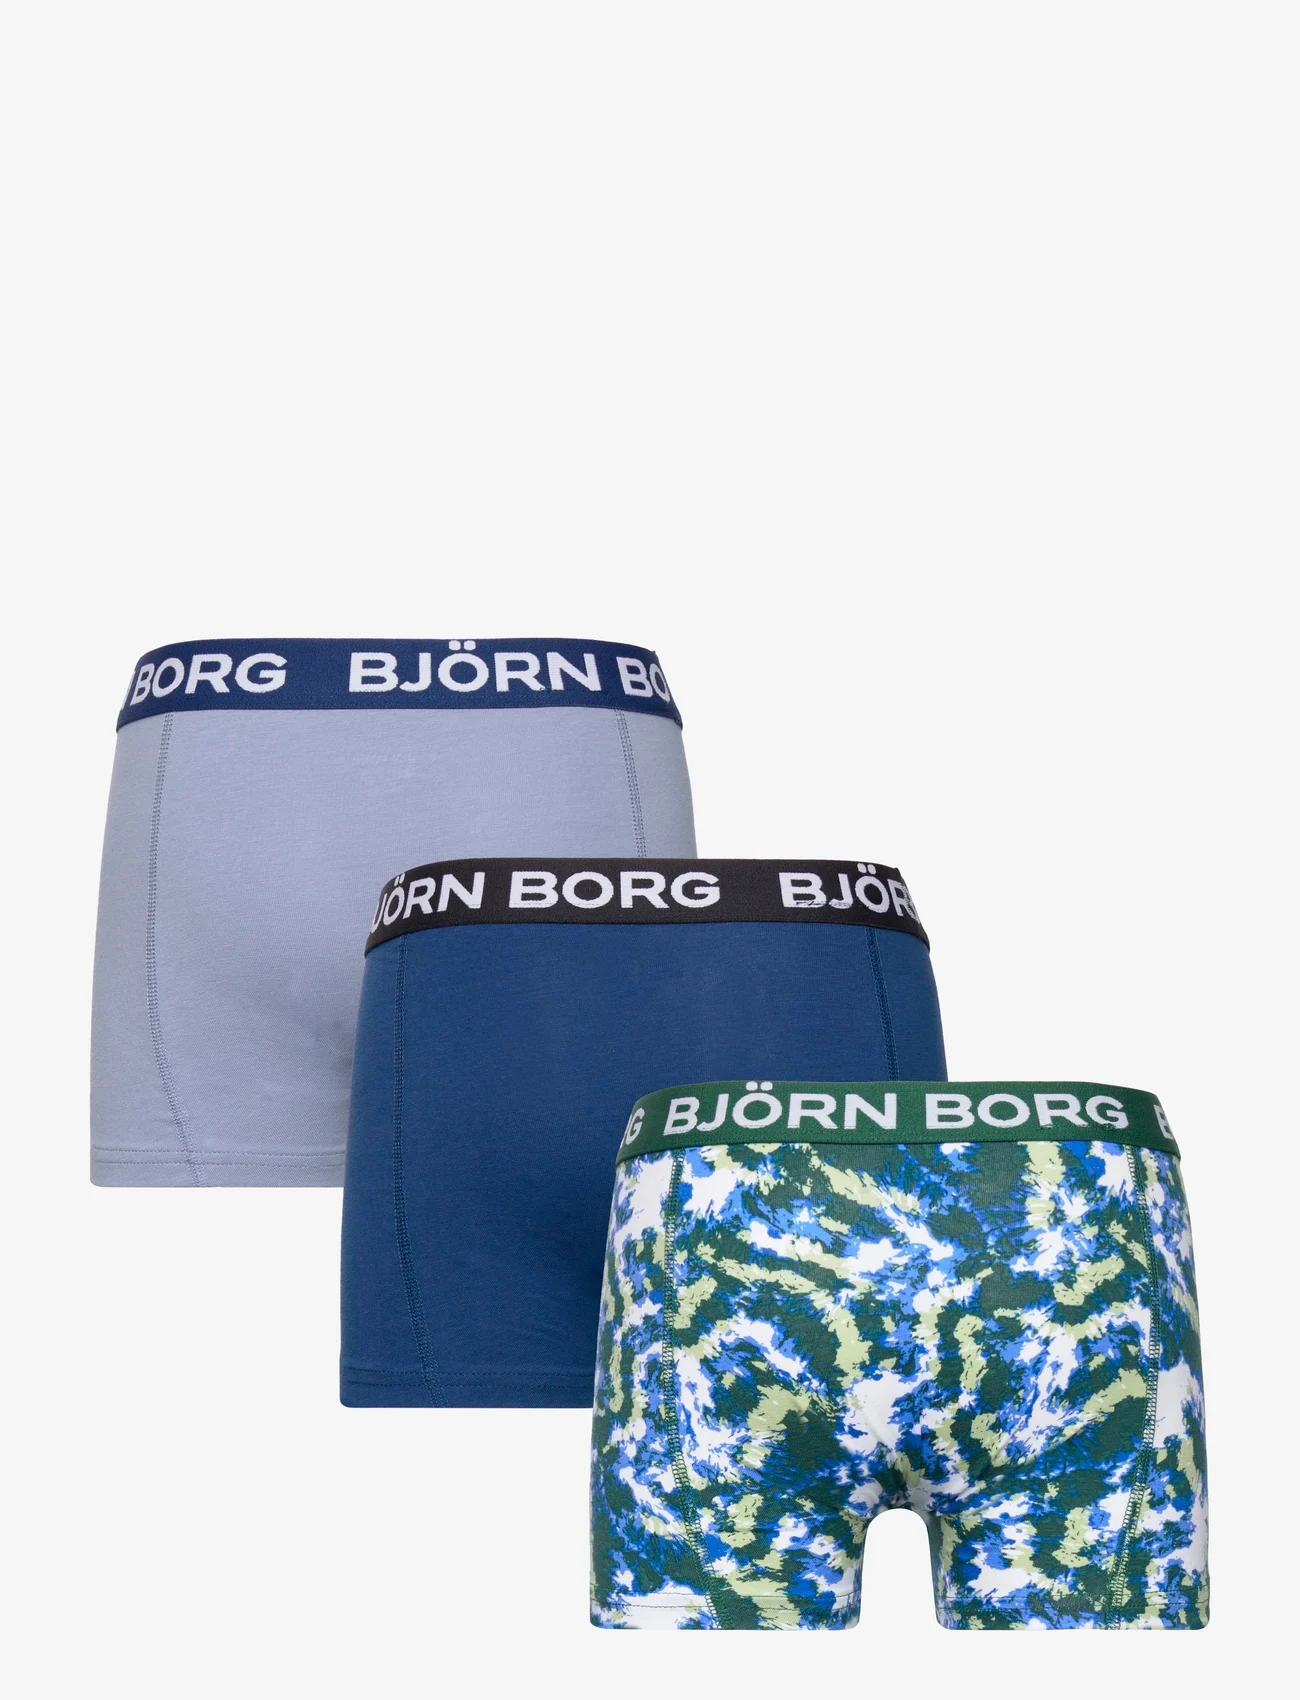 Björn Borg - CORE BOXER 3p - onderbroeken - multipack 3 - 1